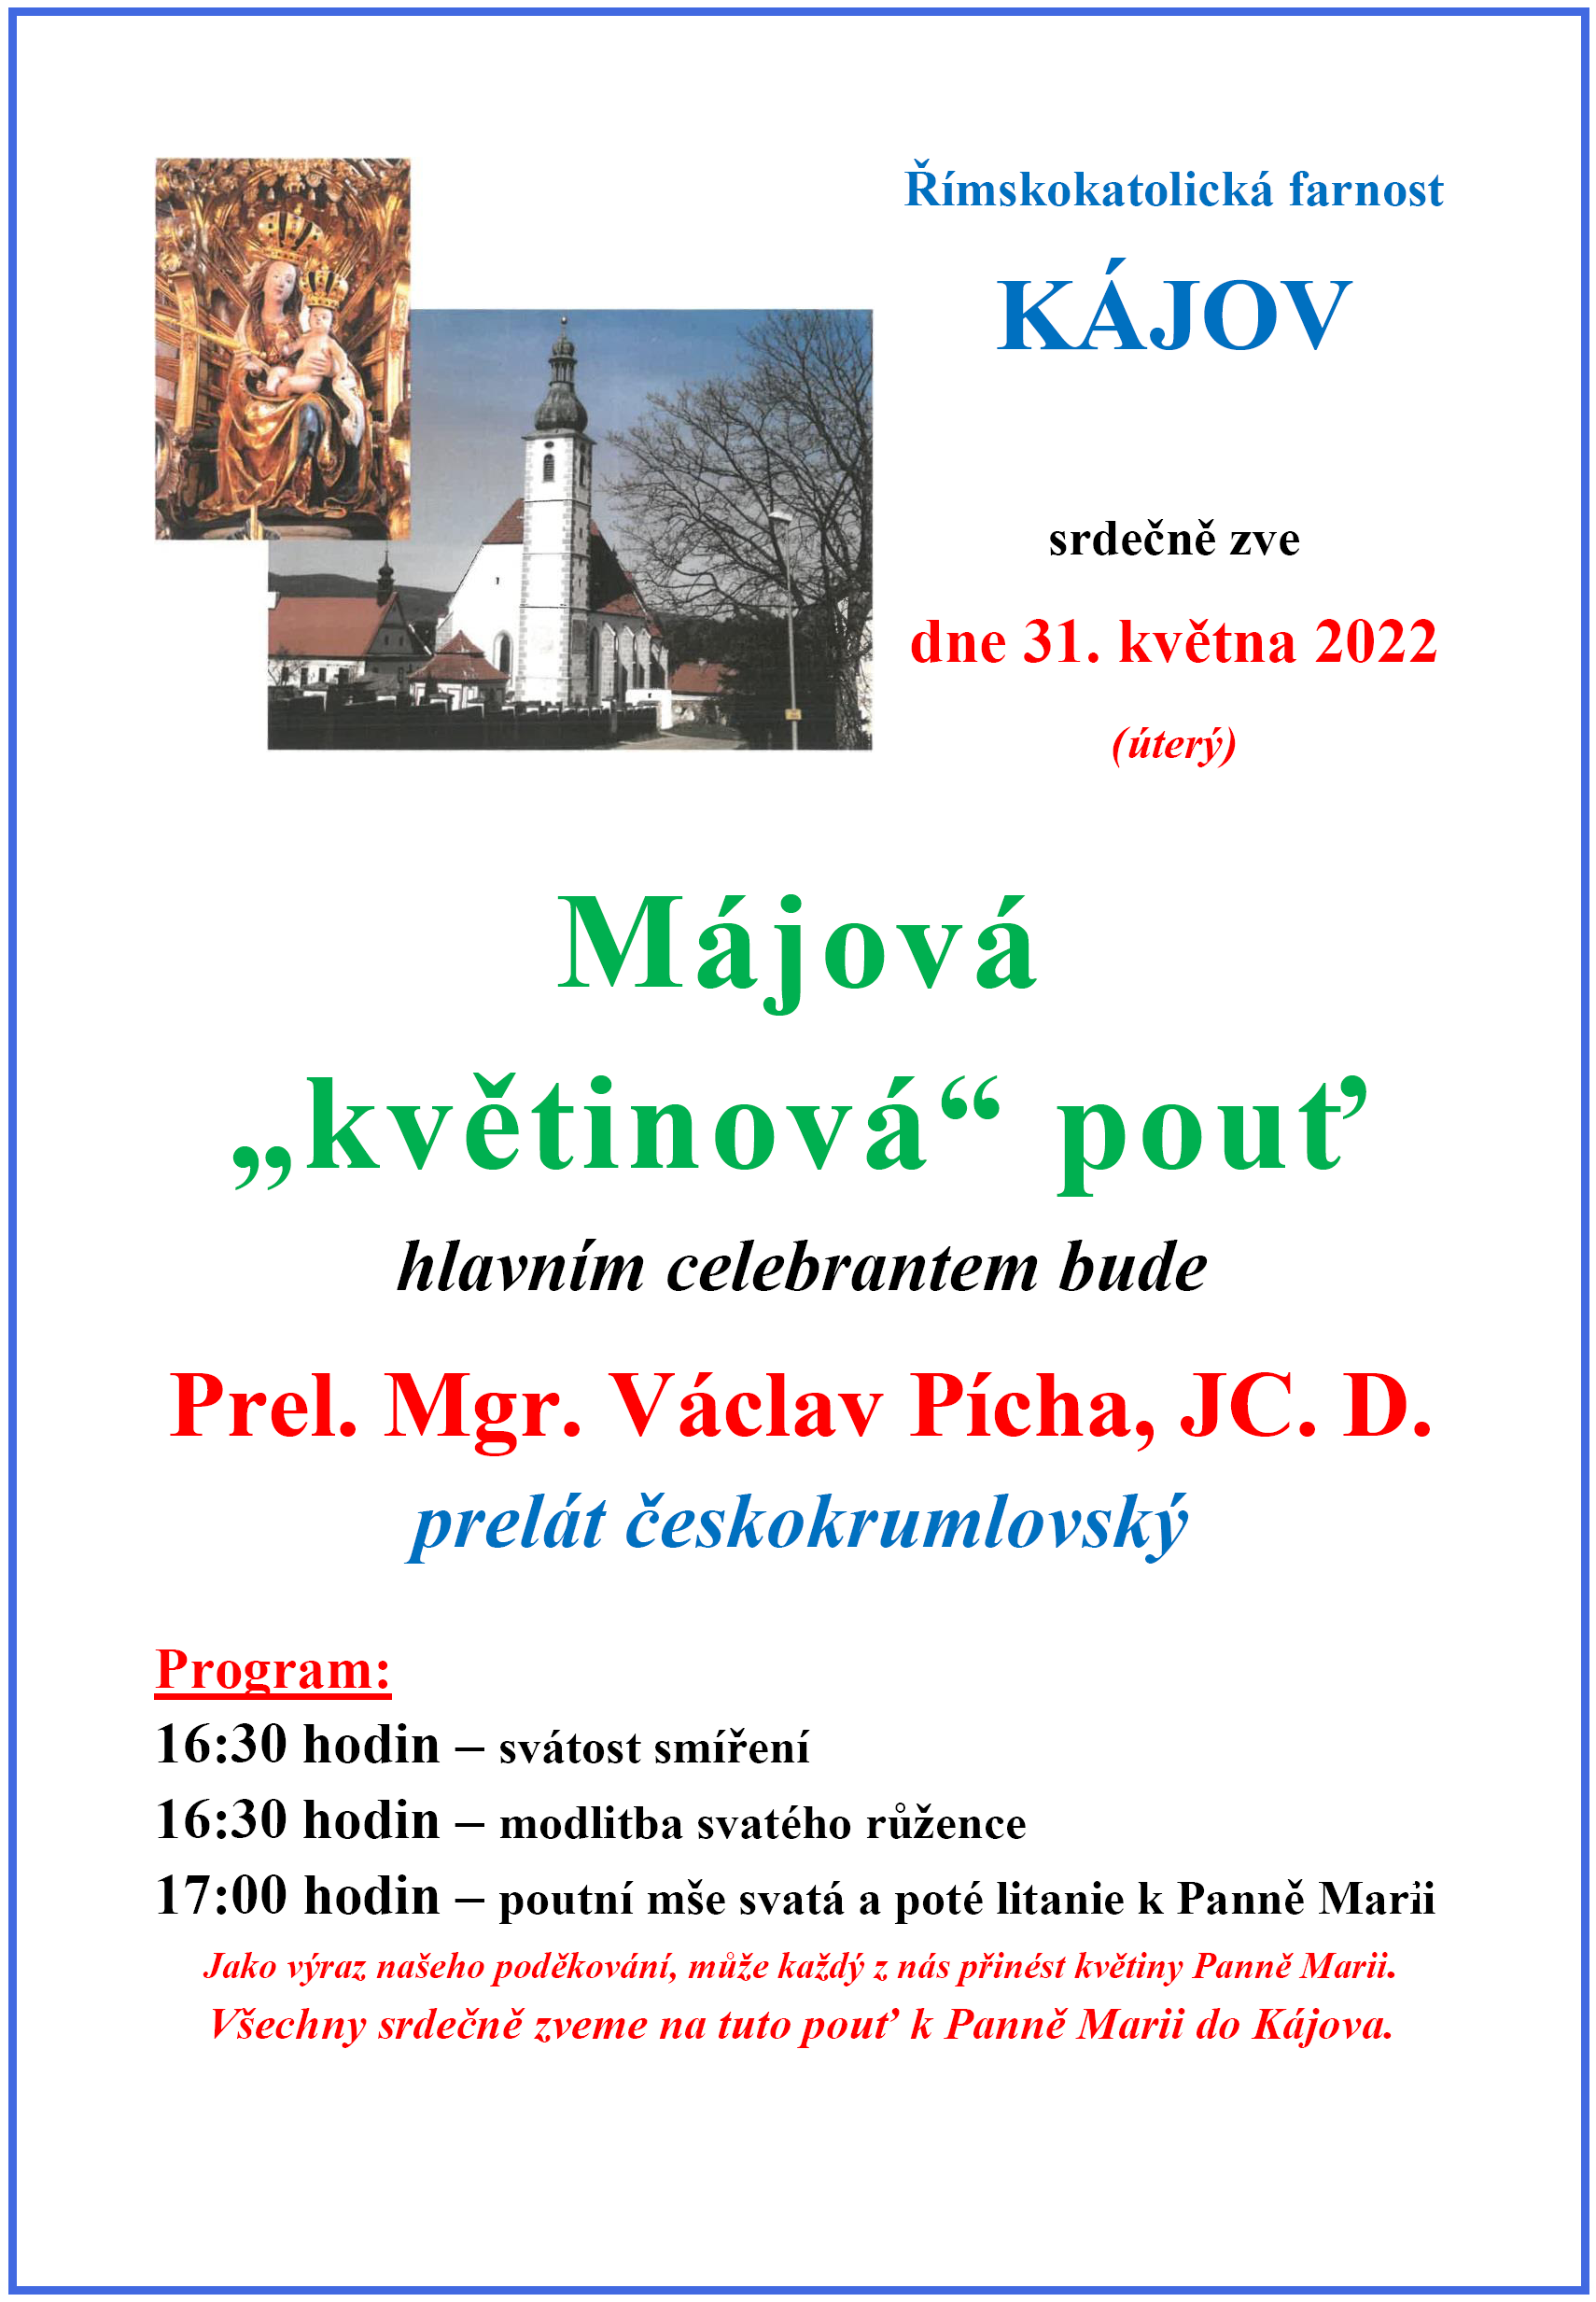 majova_kajovska_pout_2022.png